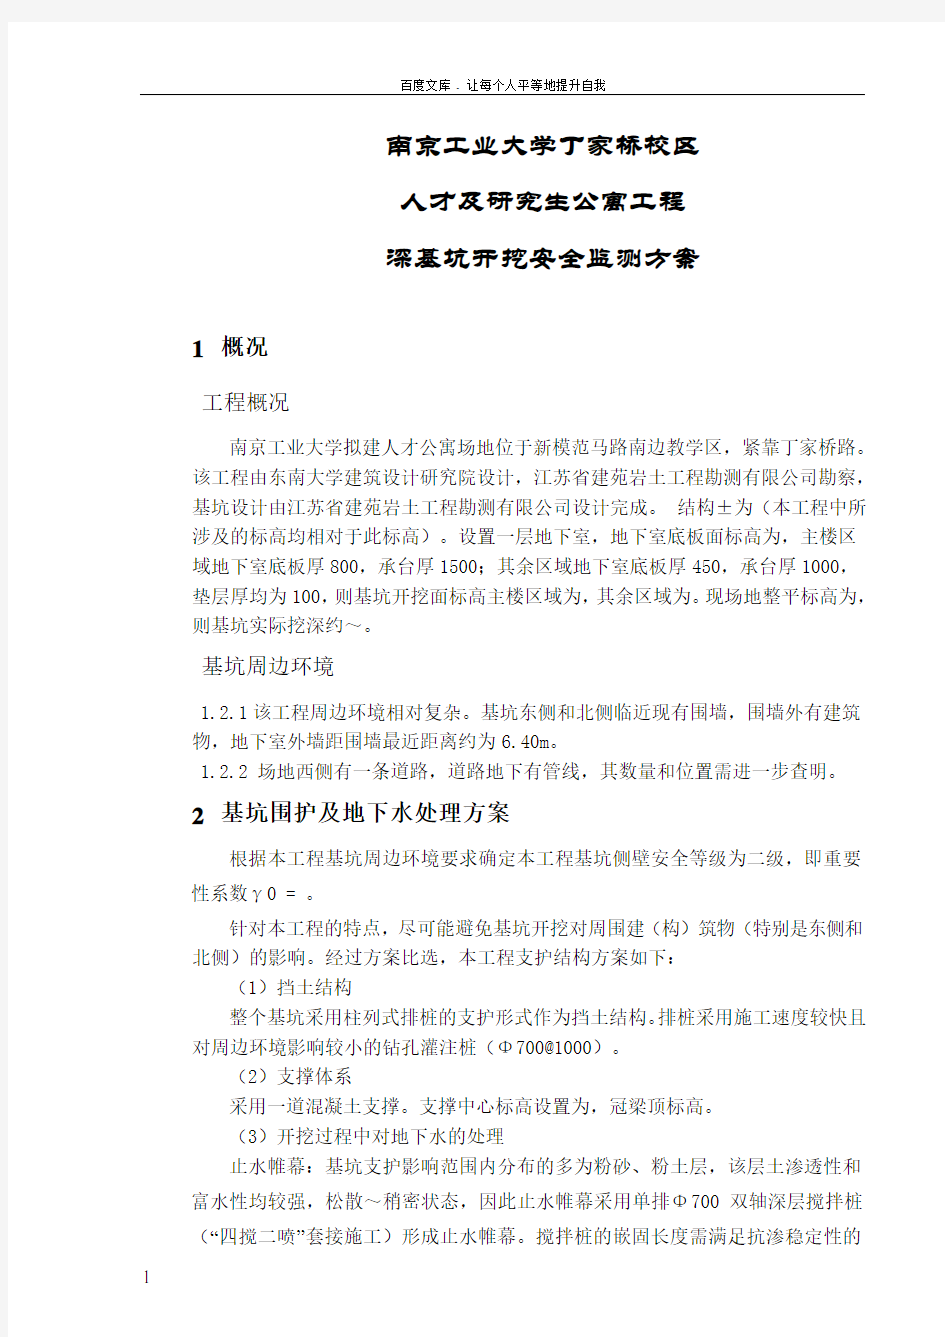 南京工业大学人才公寓基坑围护监测方案